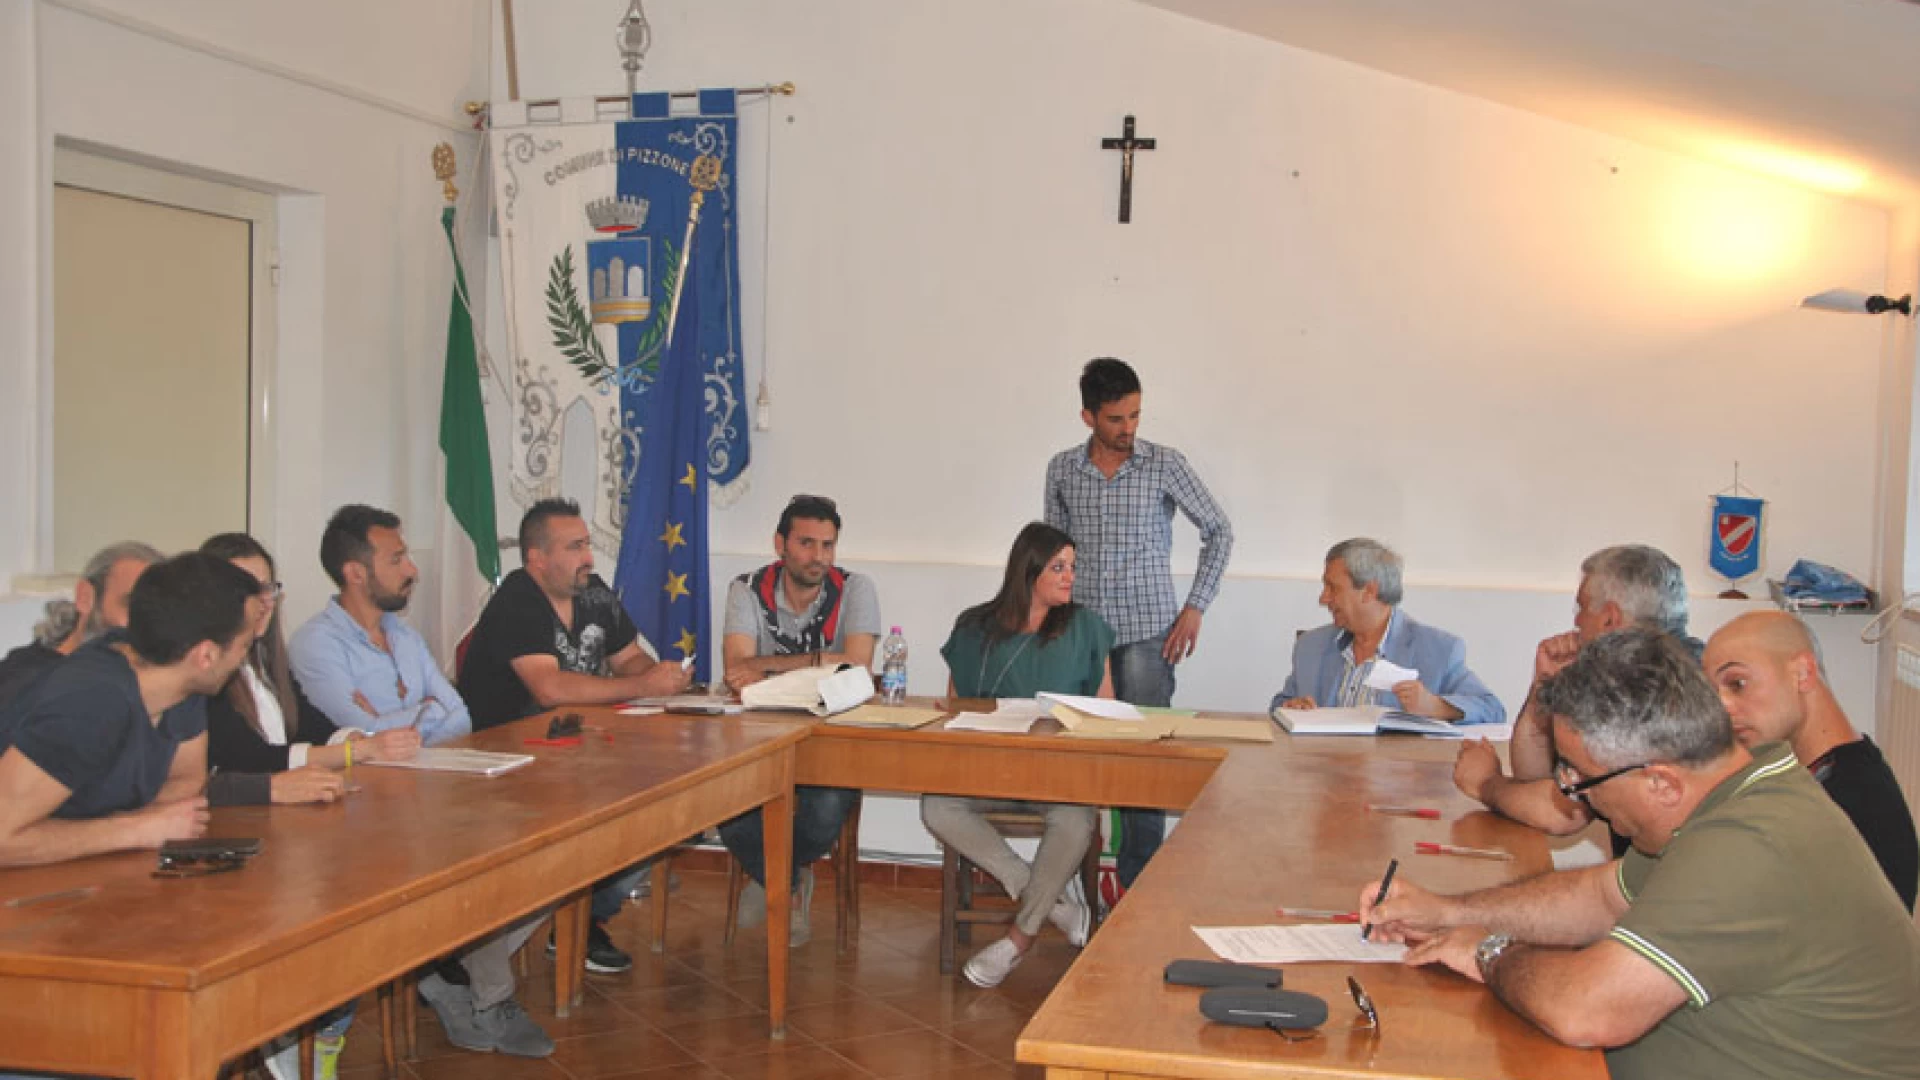 Filignano e Pizzone, formulata l’adesione ufficiale in Consiglio al Gal Molise Rurale.